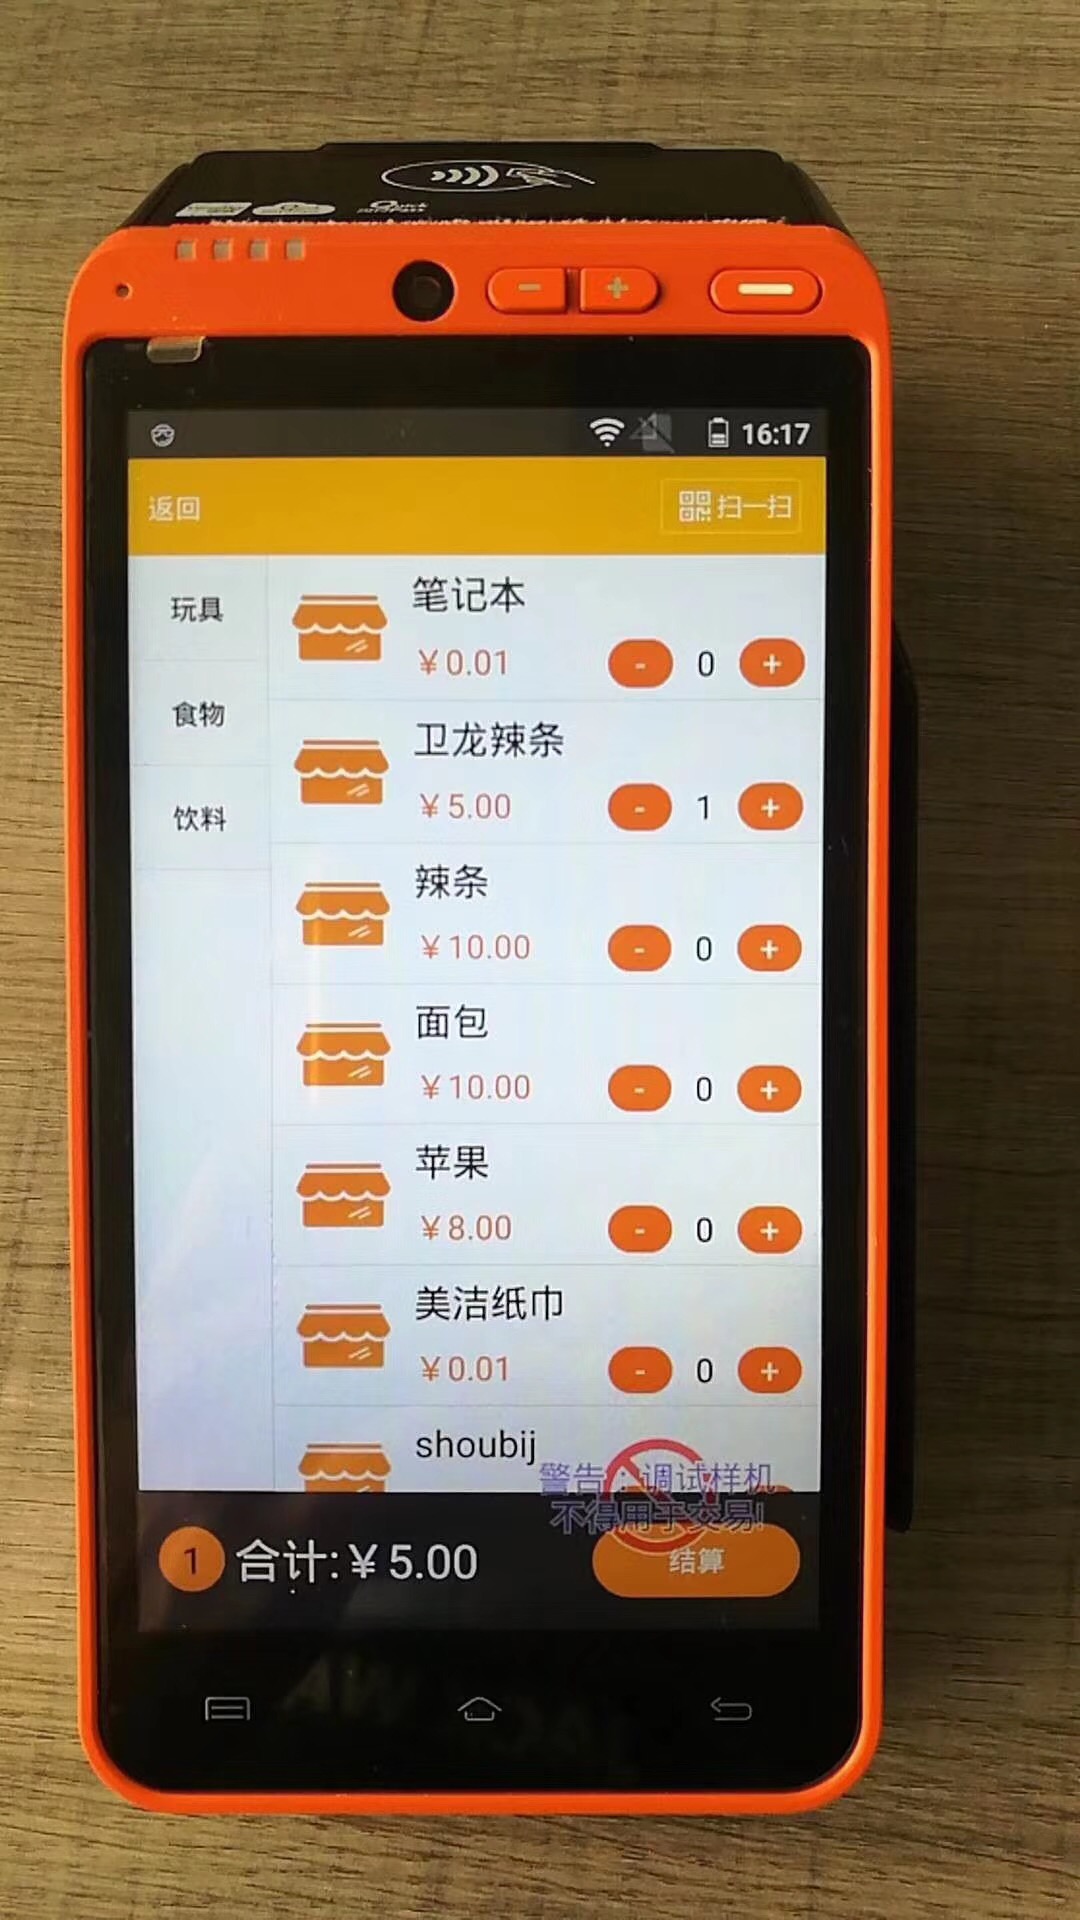 深圳市大智汇智能PDA移动手持机自助办卡充值扣费机厂家直销